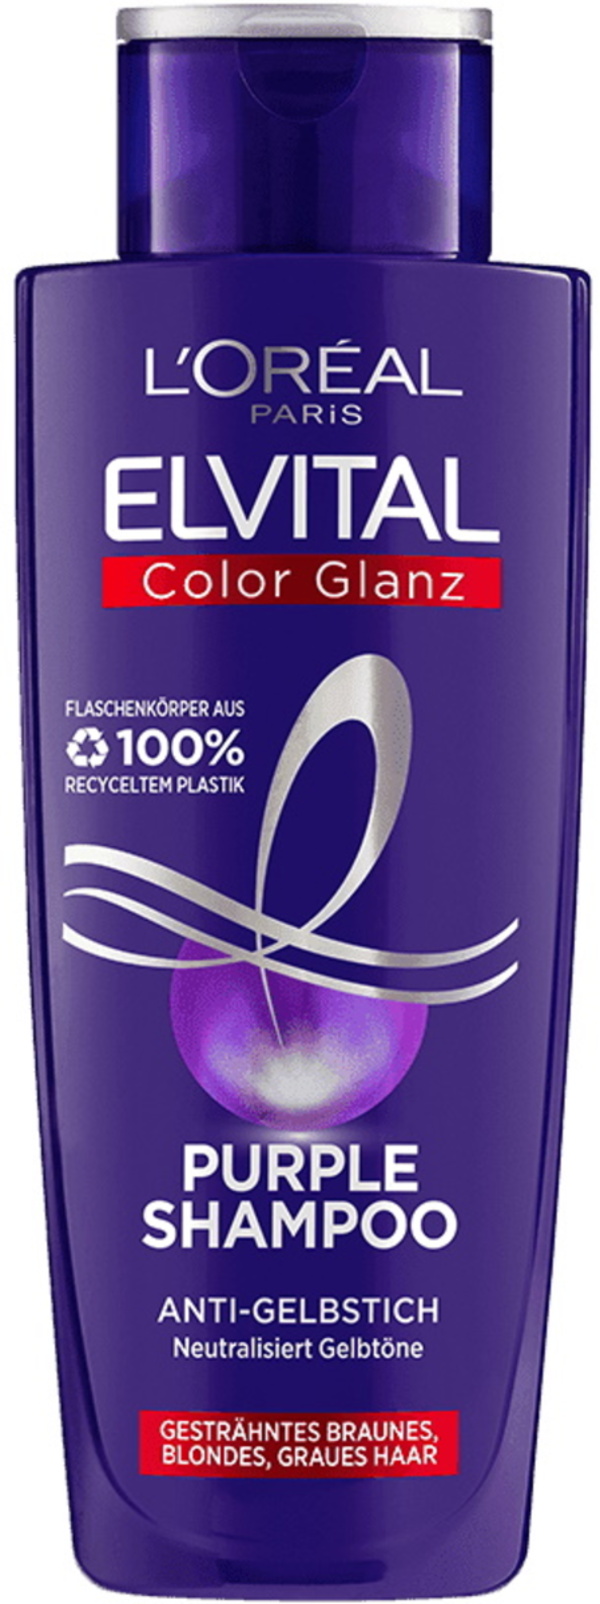 Bild 1 von L'Oreal Elvital Color Glanz Purple Shampoo 200ML